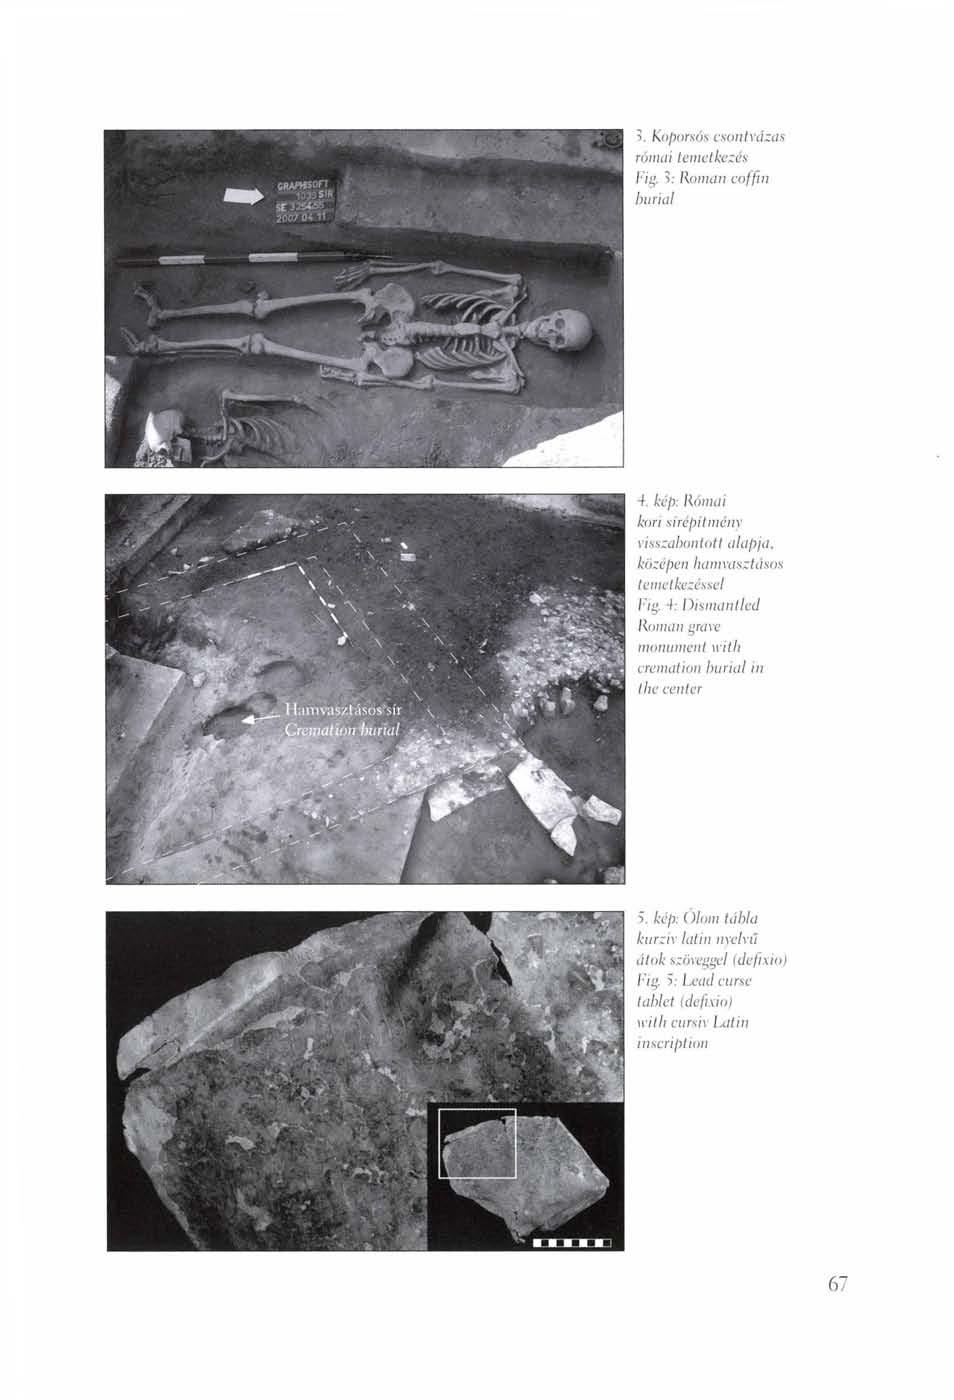 >. Koporsós csontvázas római temetkezés Fig. >: Roman coffin burial -f. kép: Római kori sírépítmény visszabontott alapja, középen hamvasztásos temetkezéssel Fig.